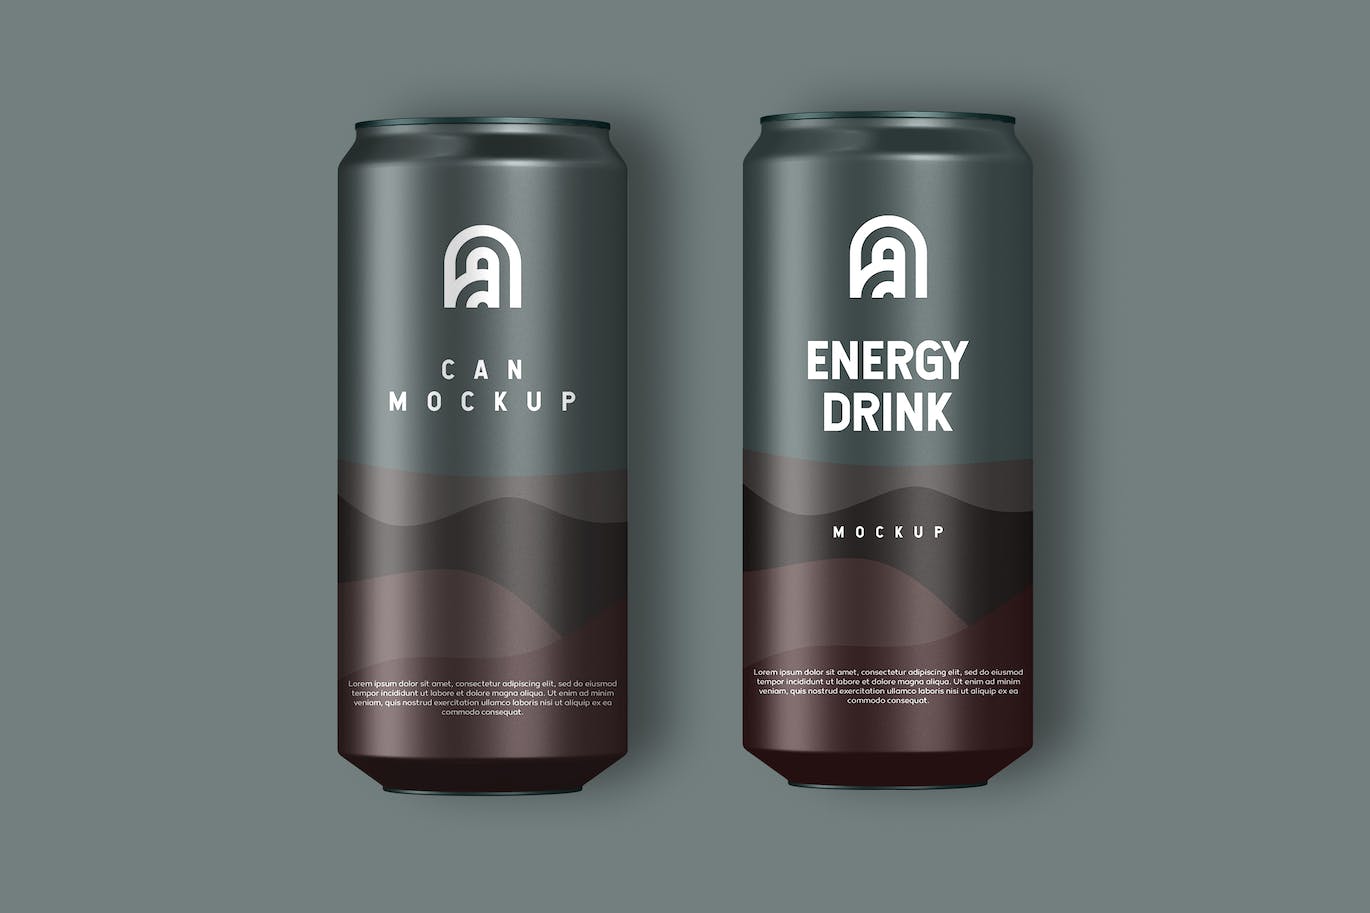 饮料易拉罐外观包装设计样机 Drink Can Mockup 样机素材 第1张